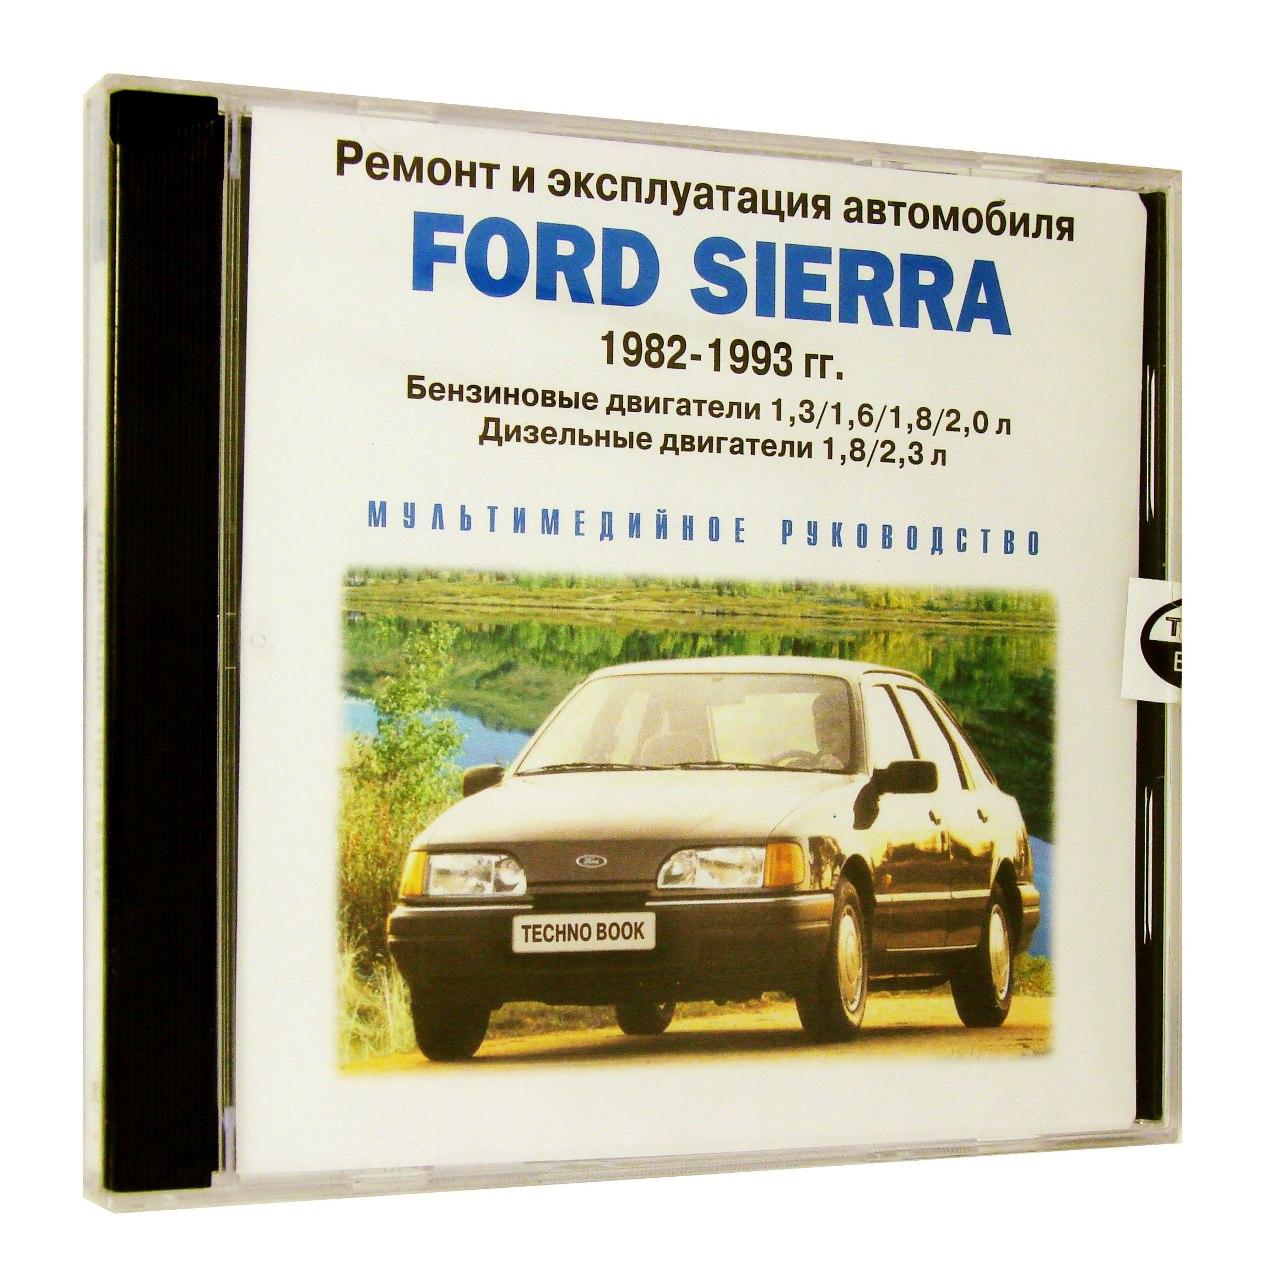 Компьютерный компакт-диск Ford Sierra 1982-1993 г.ремонт и эксплуатация автомобиля (ПК), фирма RMG Multimedia 1 CD